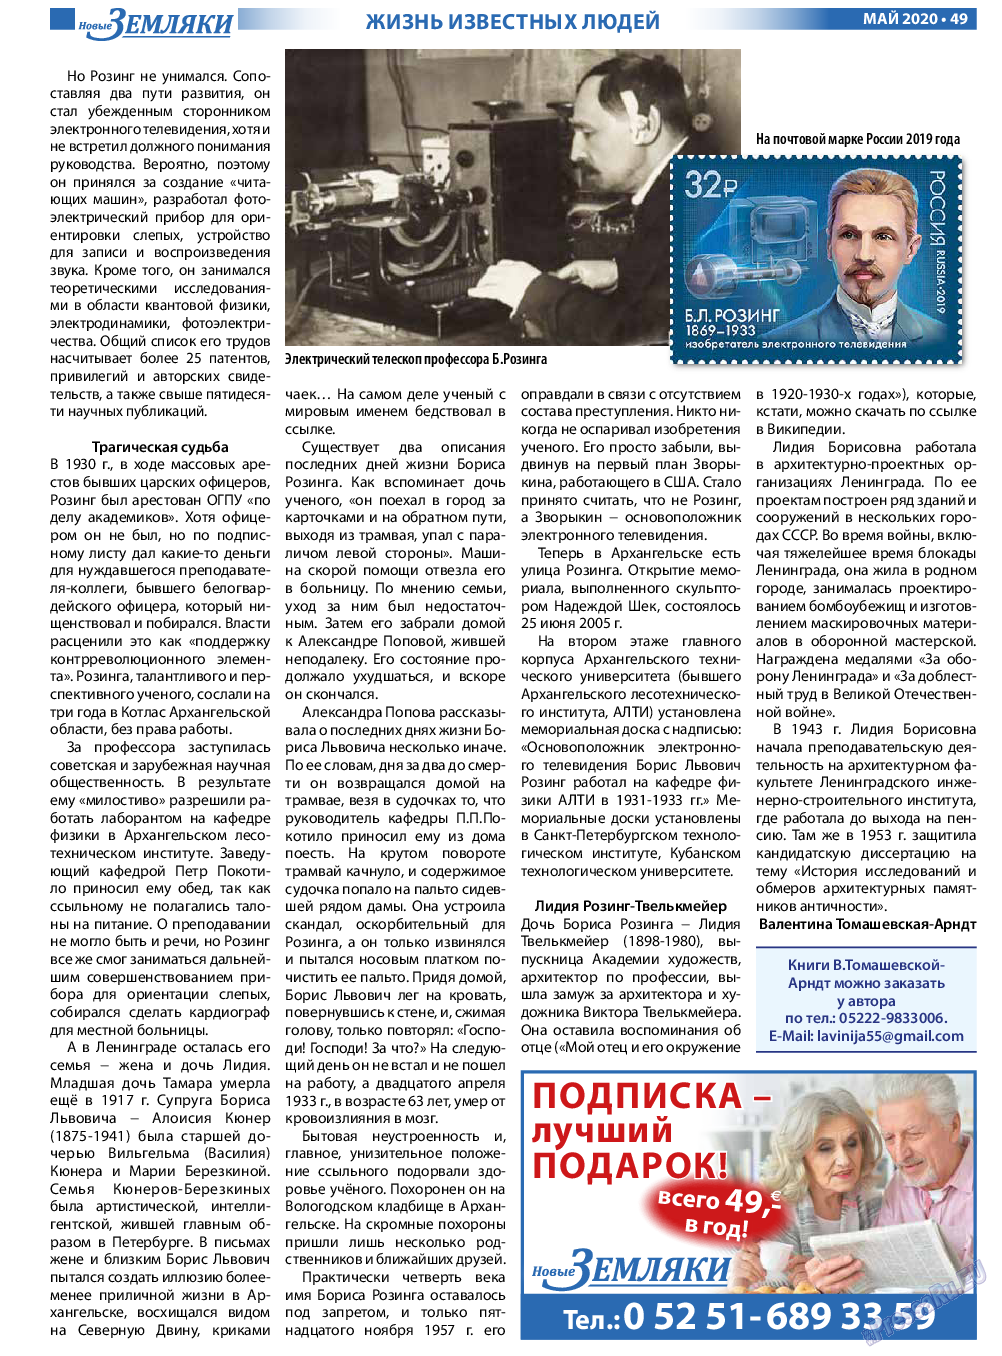 Новые Земляки, газета. 2020 №5 стр.49